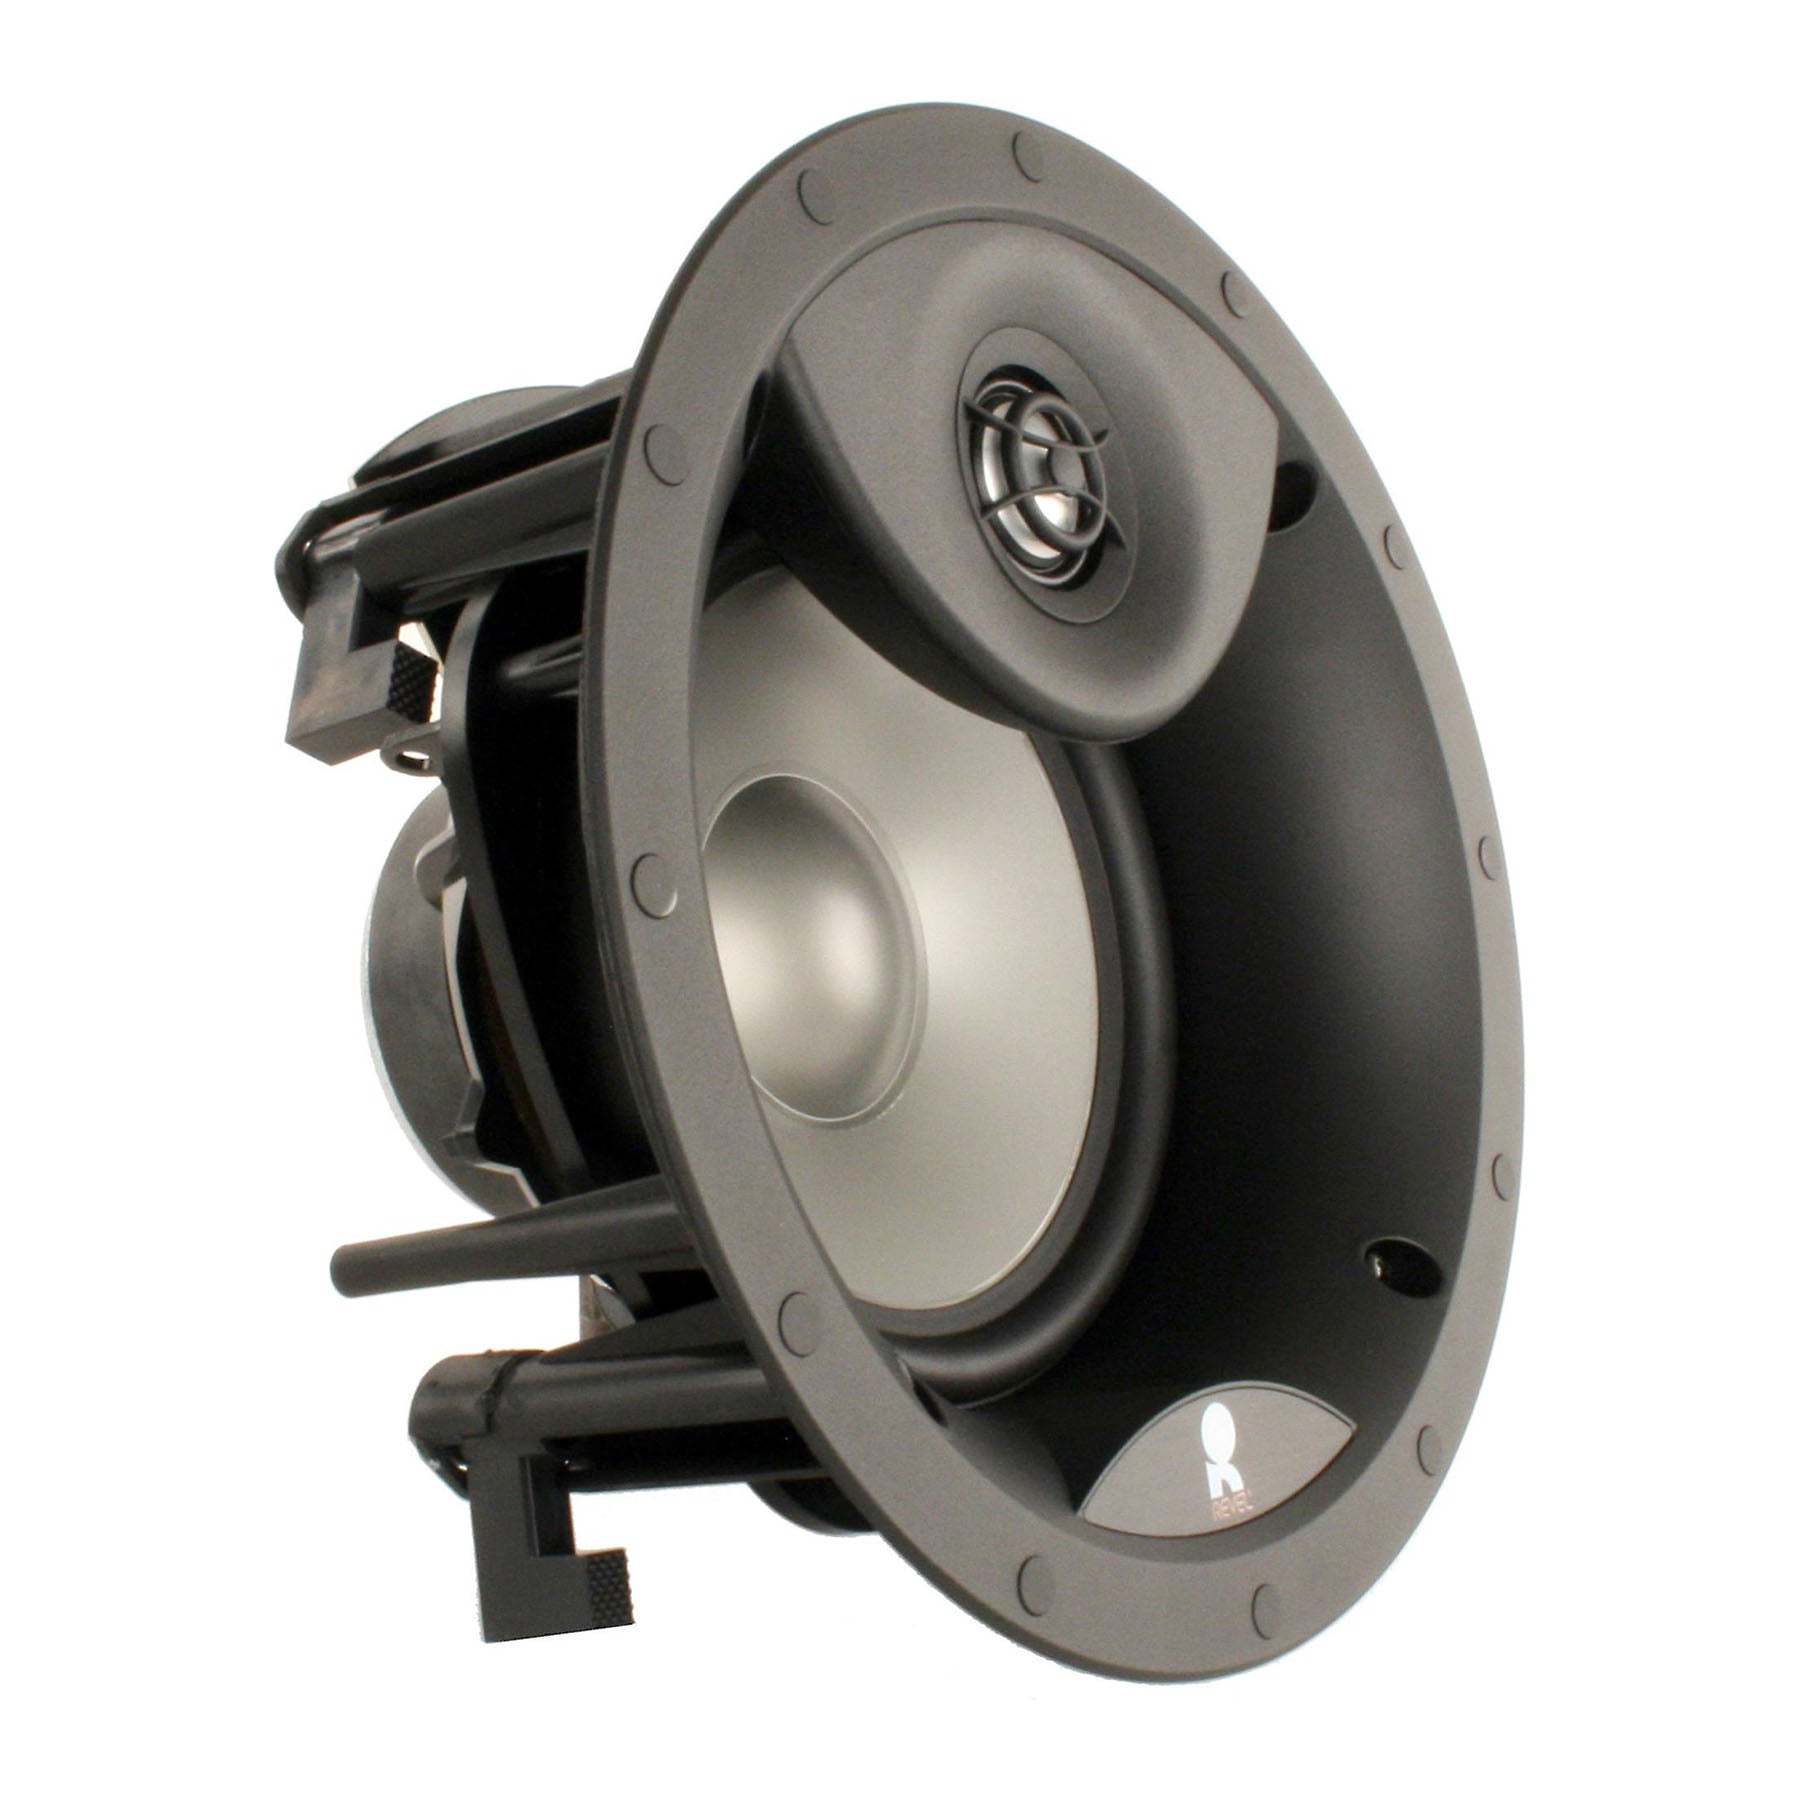 Revel C363 6 ½" In-Ceiling Loudspeaker